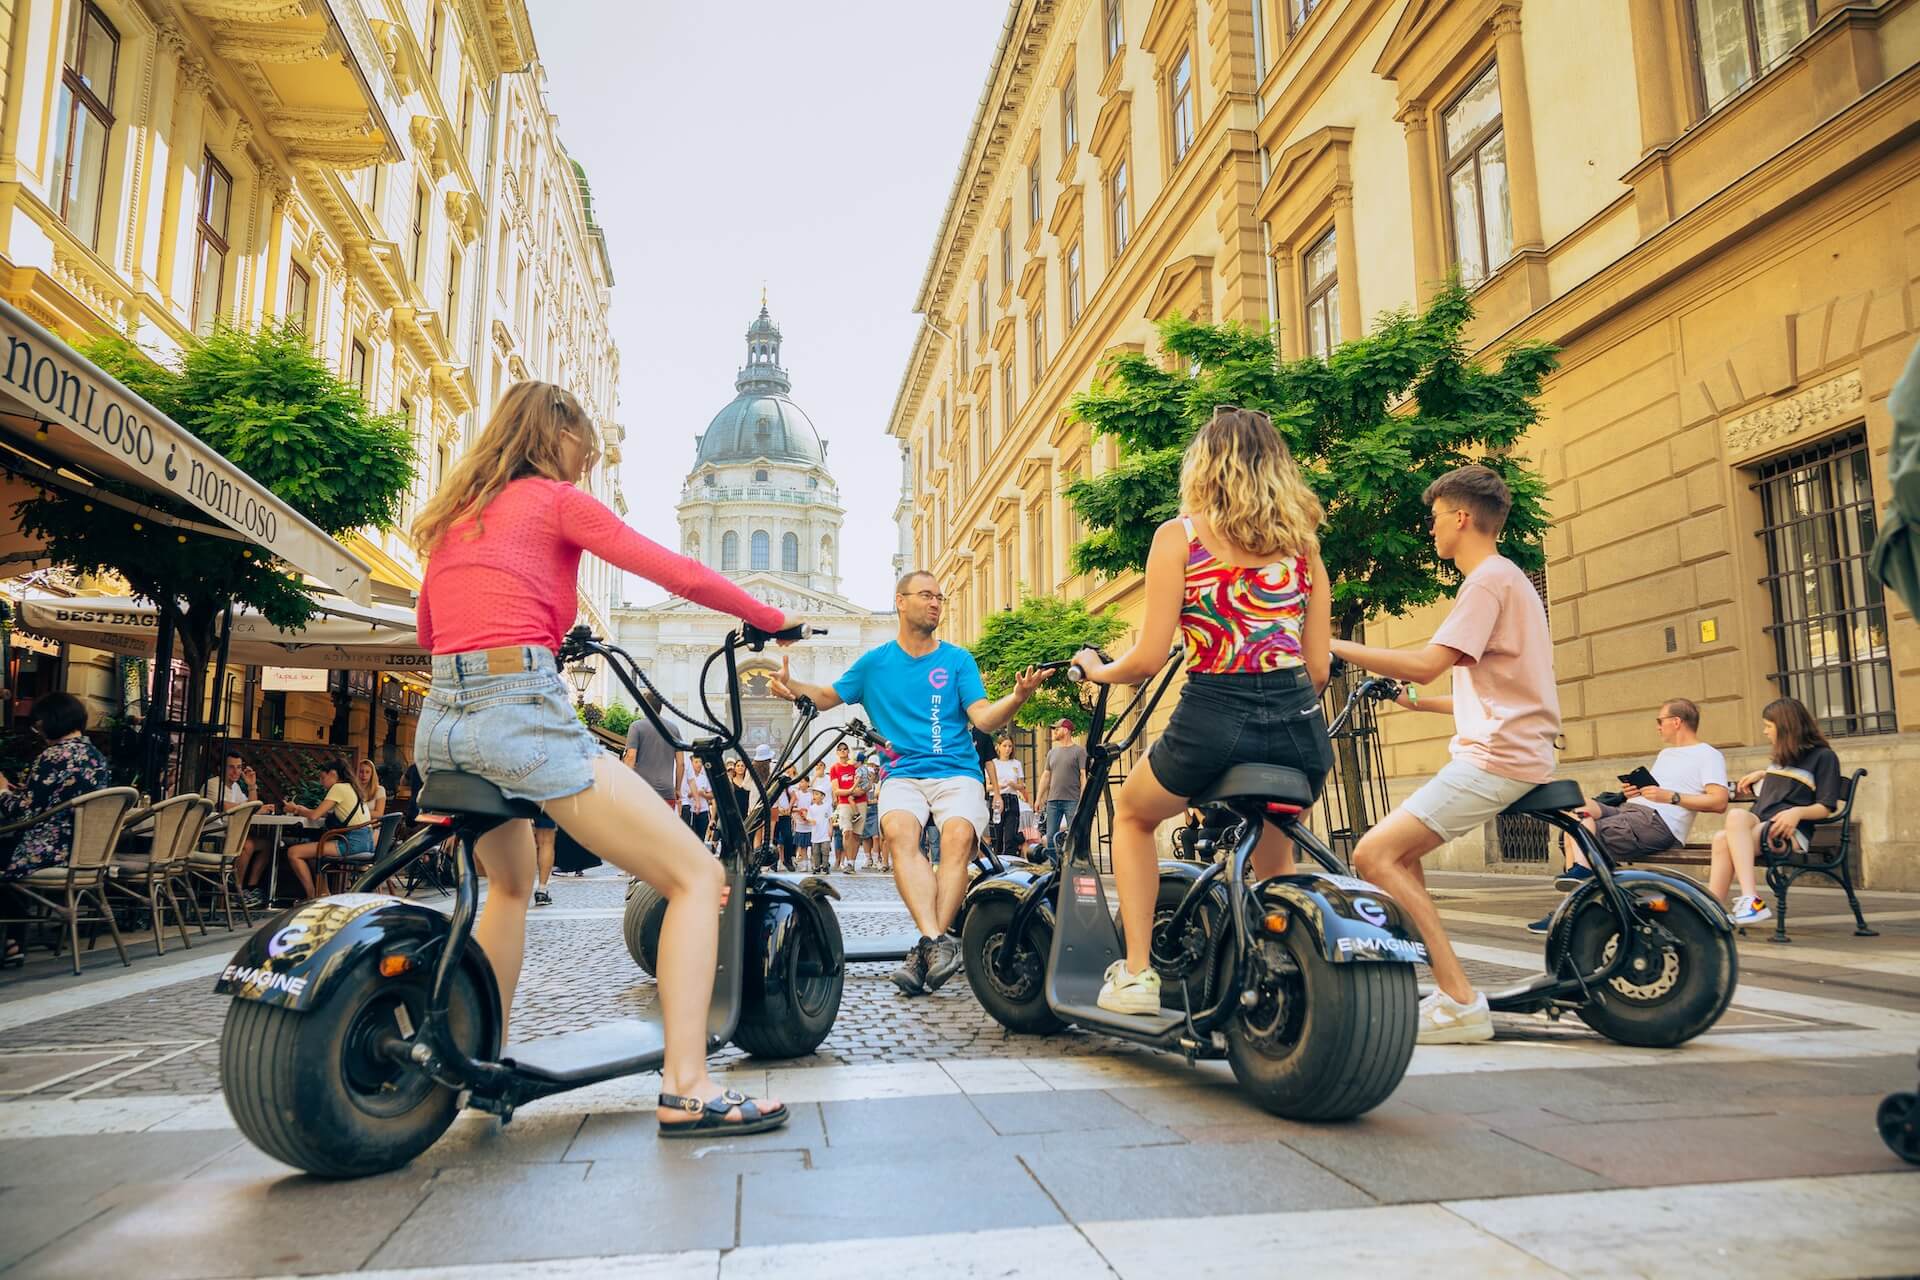 Un guide local raconte des histoires sur Budapest